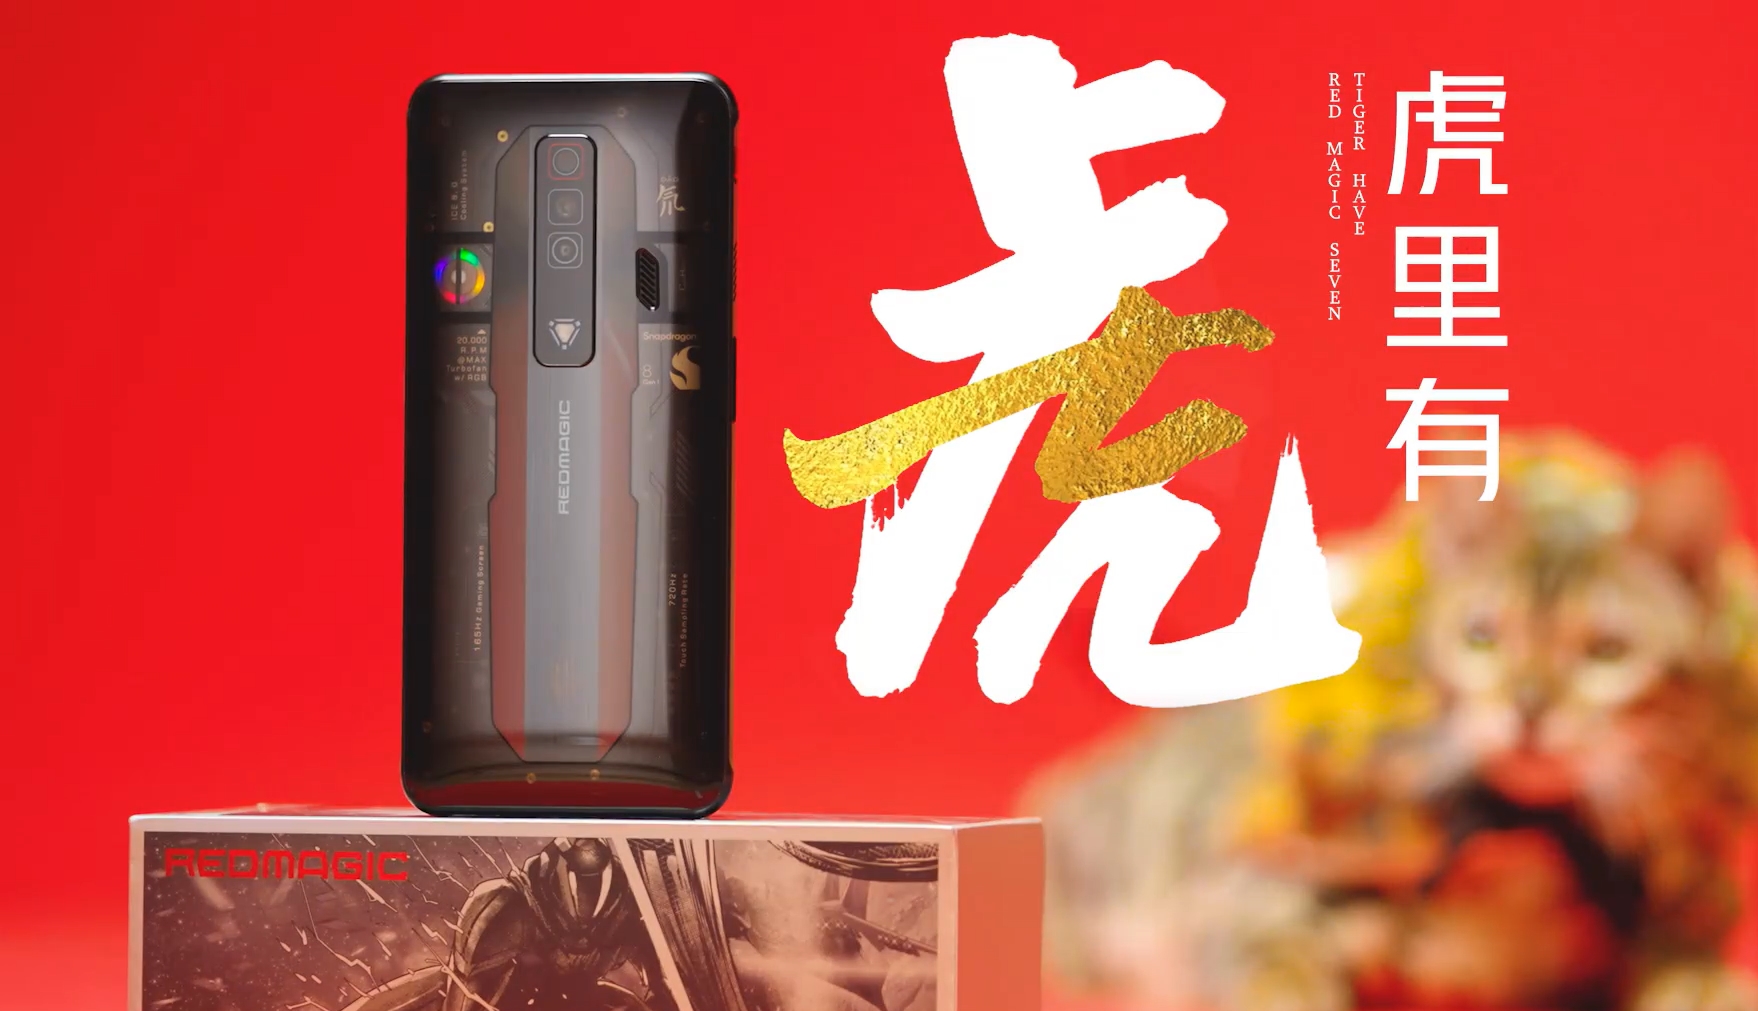 Transparente Rückseite und Triple-Kamera: Nubia zeigte vor der Ankündigung das Gaming-Smartphone Red Magic 7